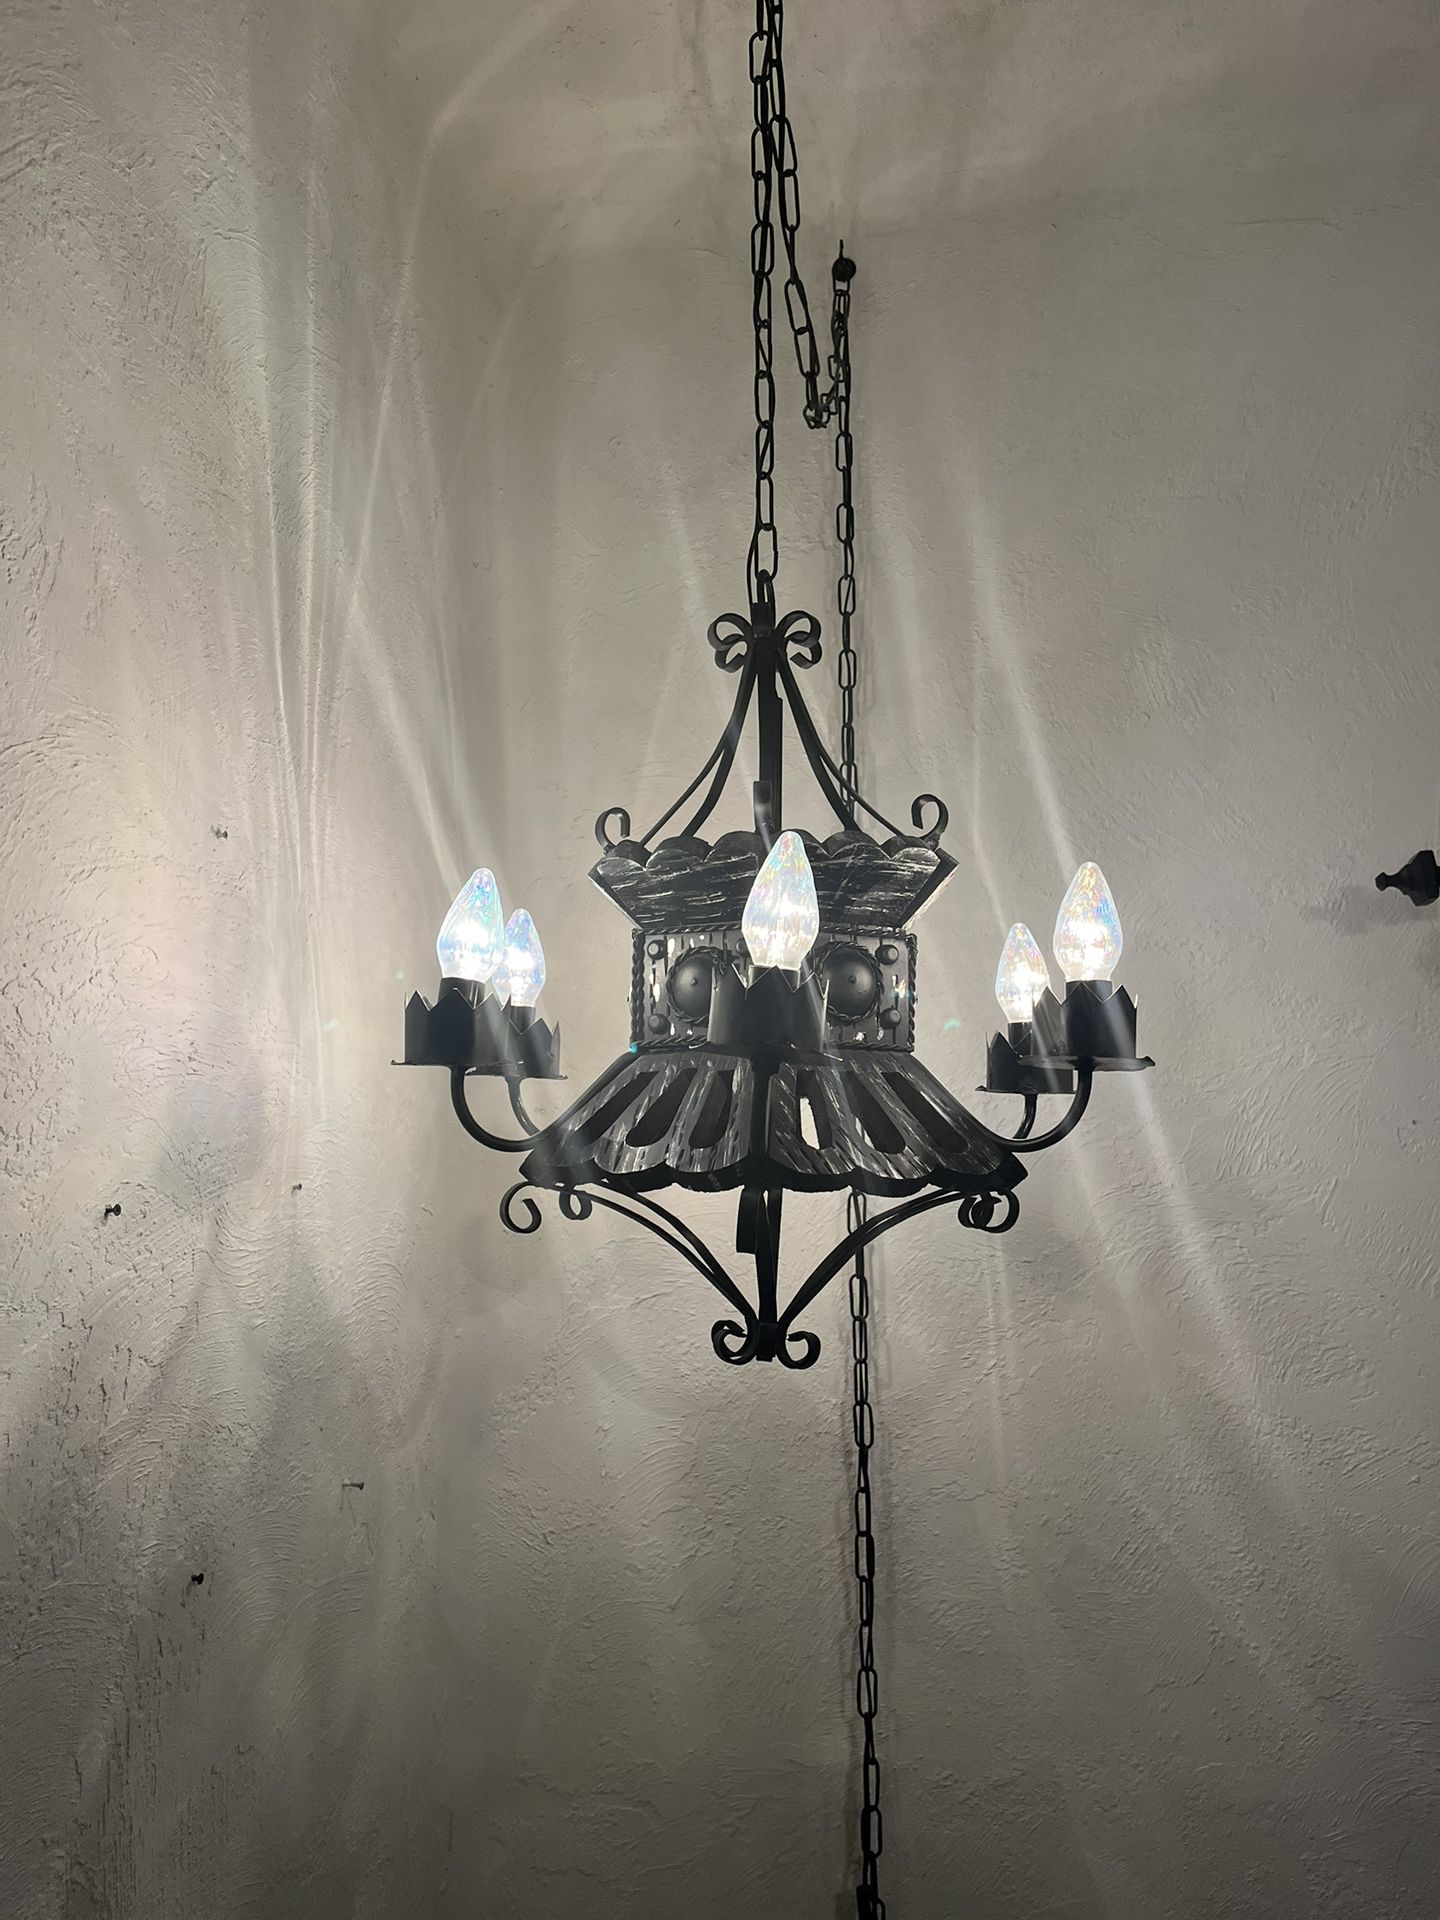 Gothic Antique Spanish Hanging Lamp